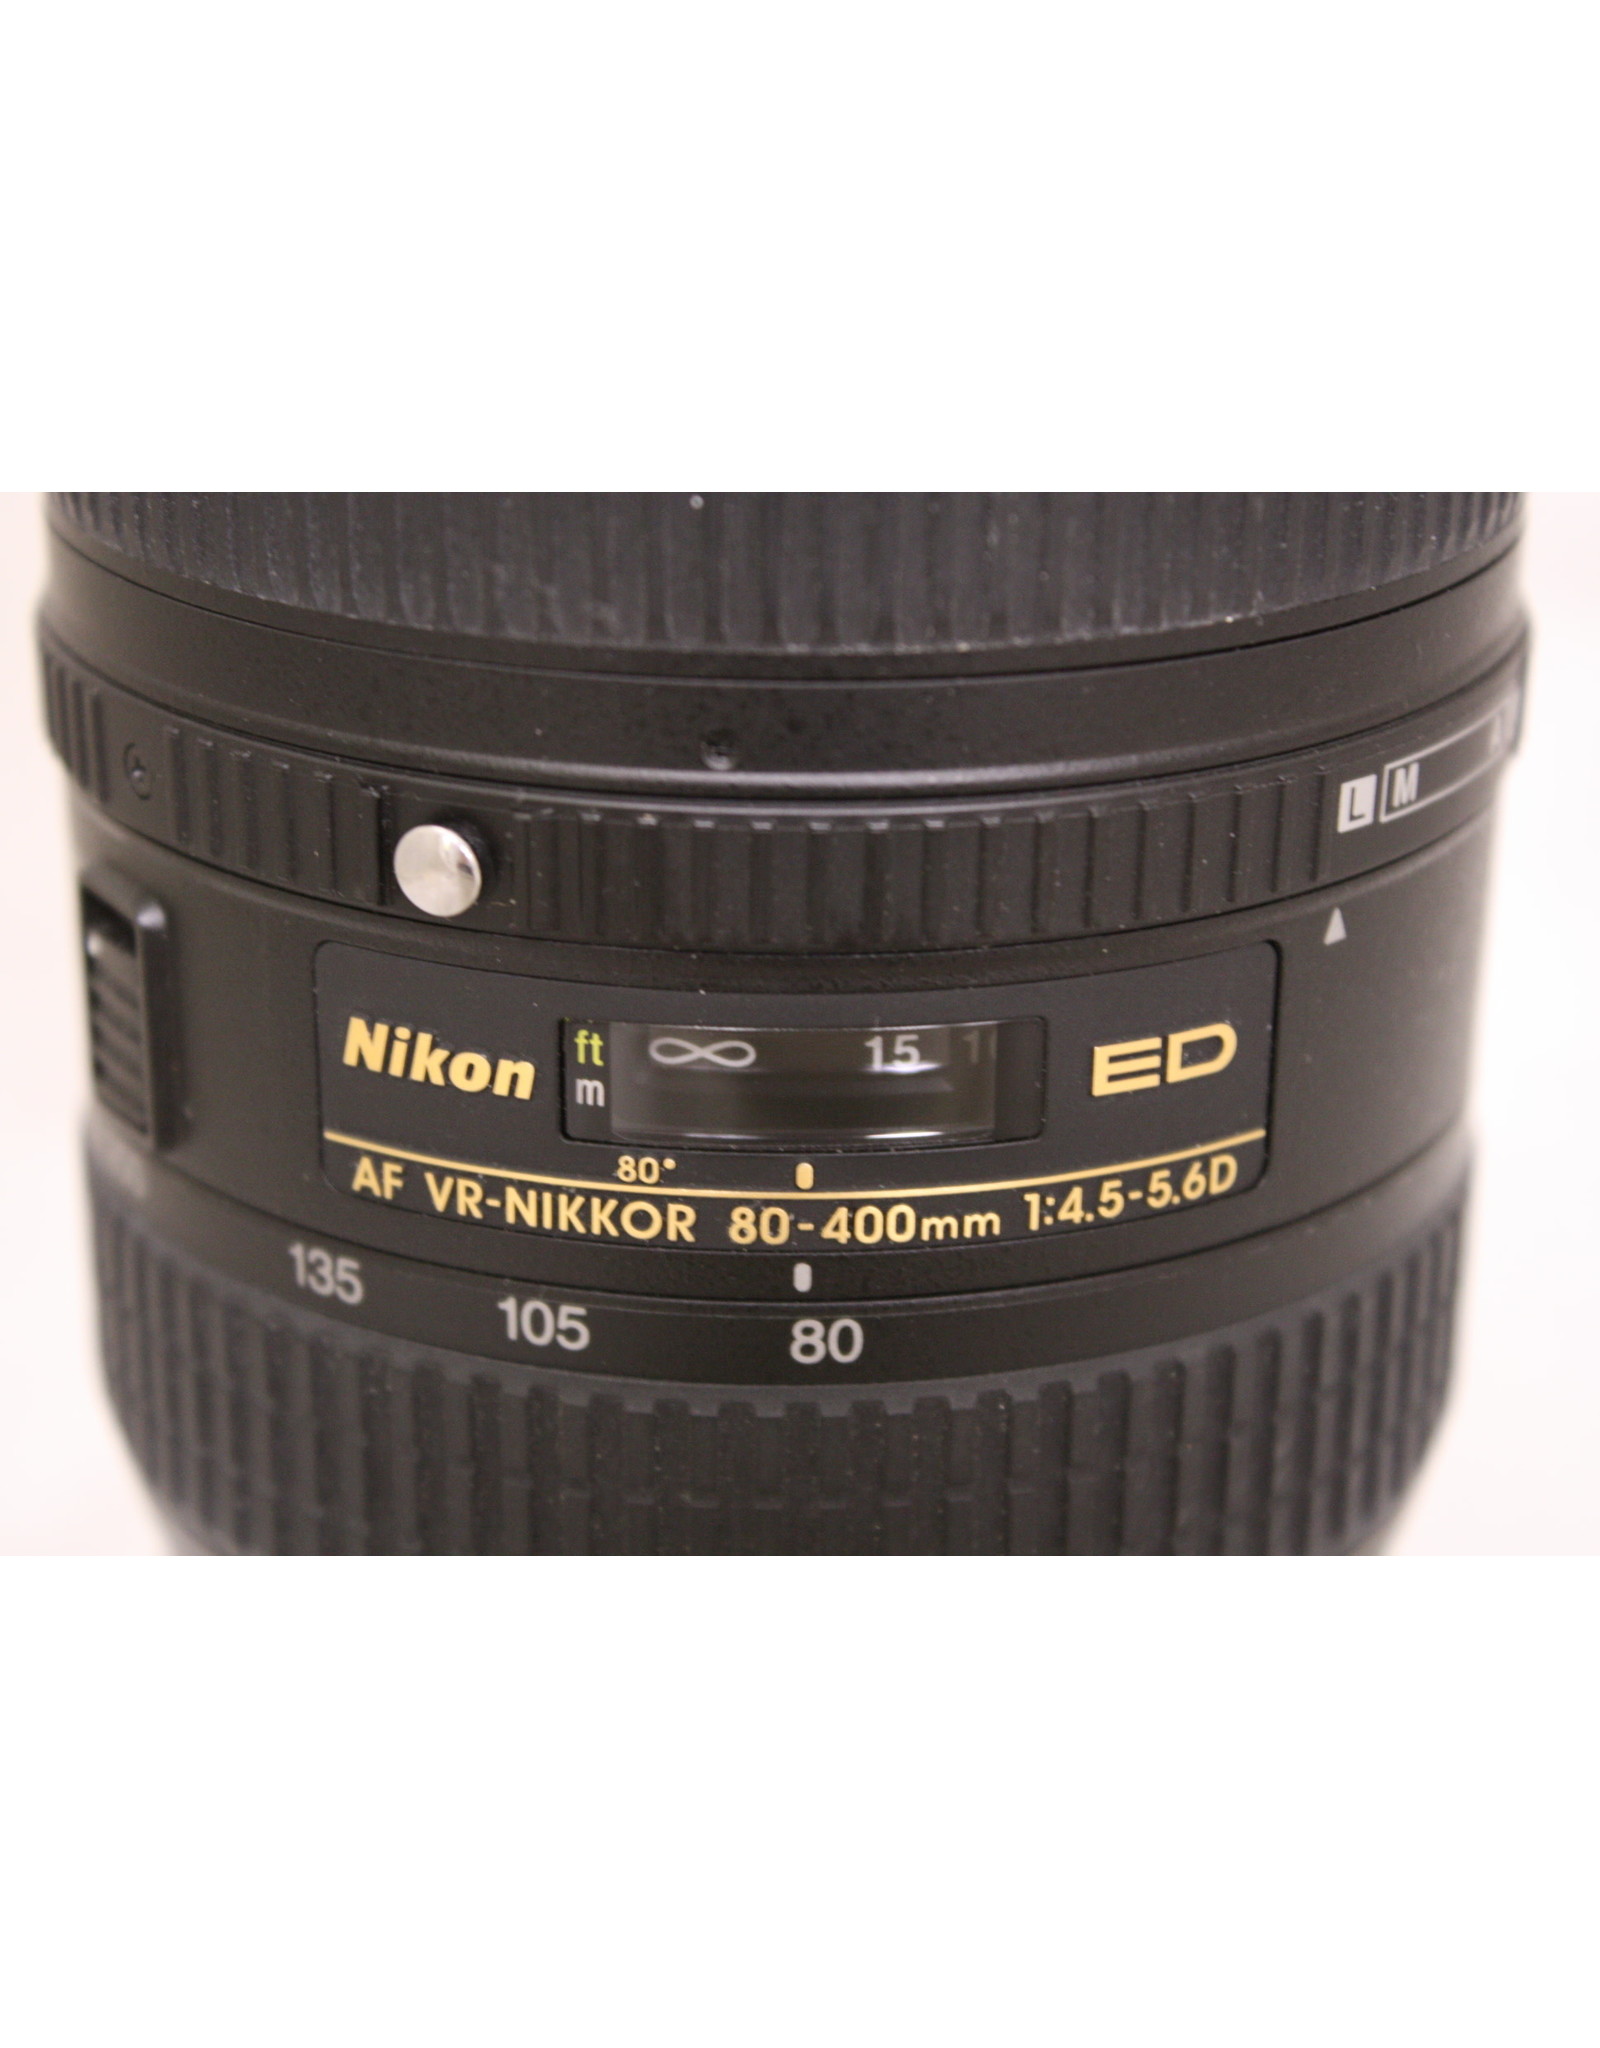 Nikon AF NIKKOR 80-400mm F4.5-5.6D ED